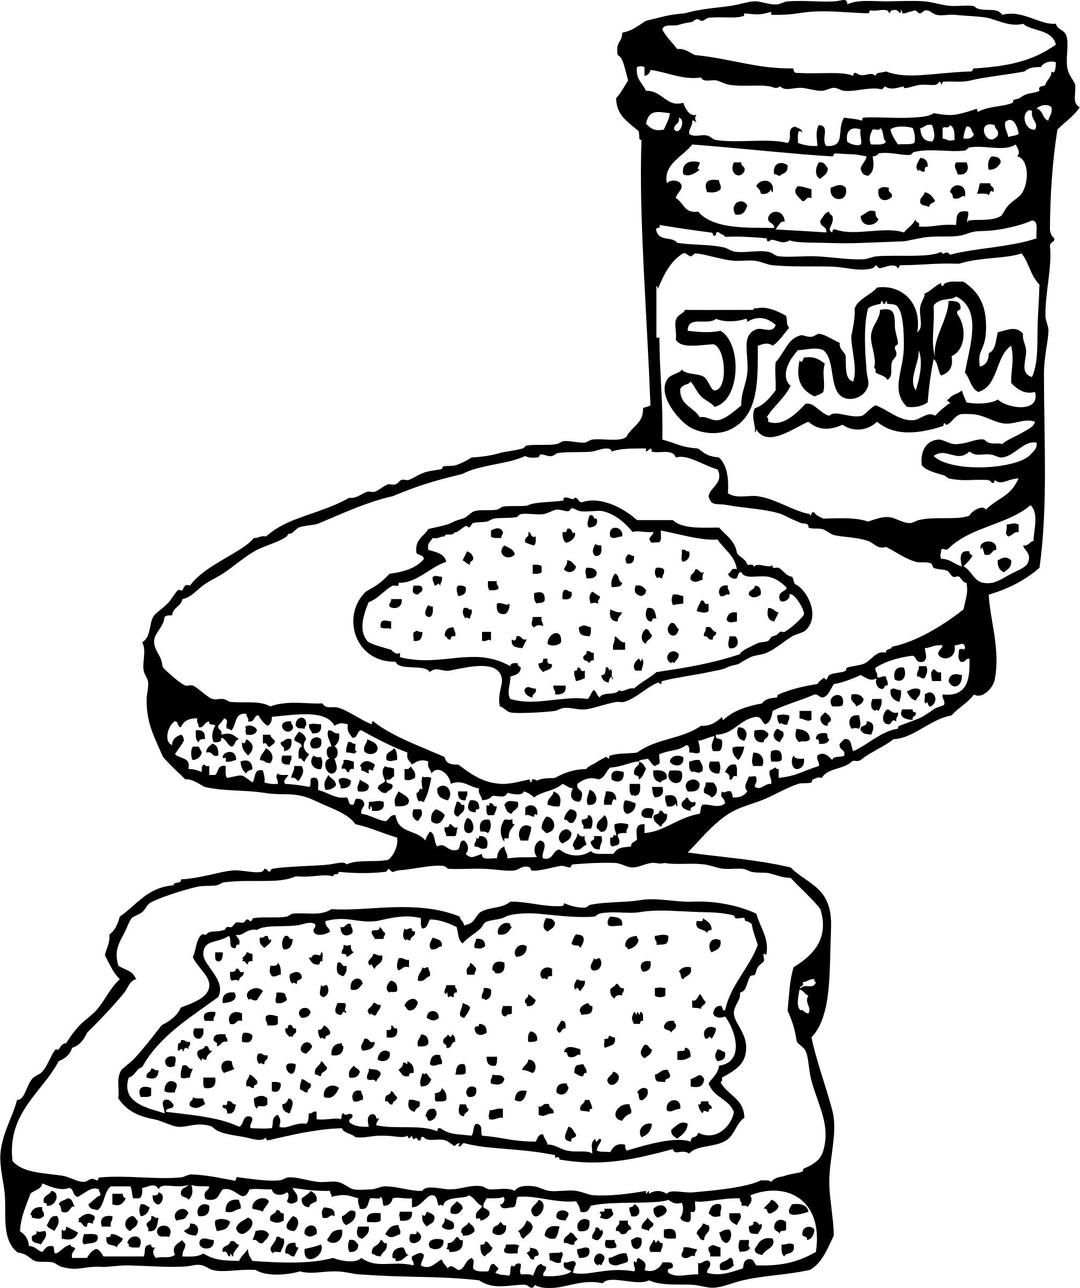 pb&j sandwich png transparent